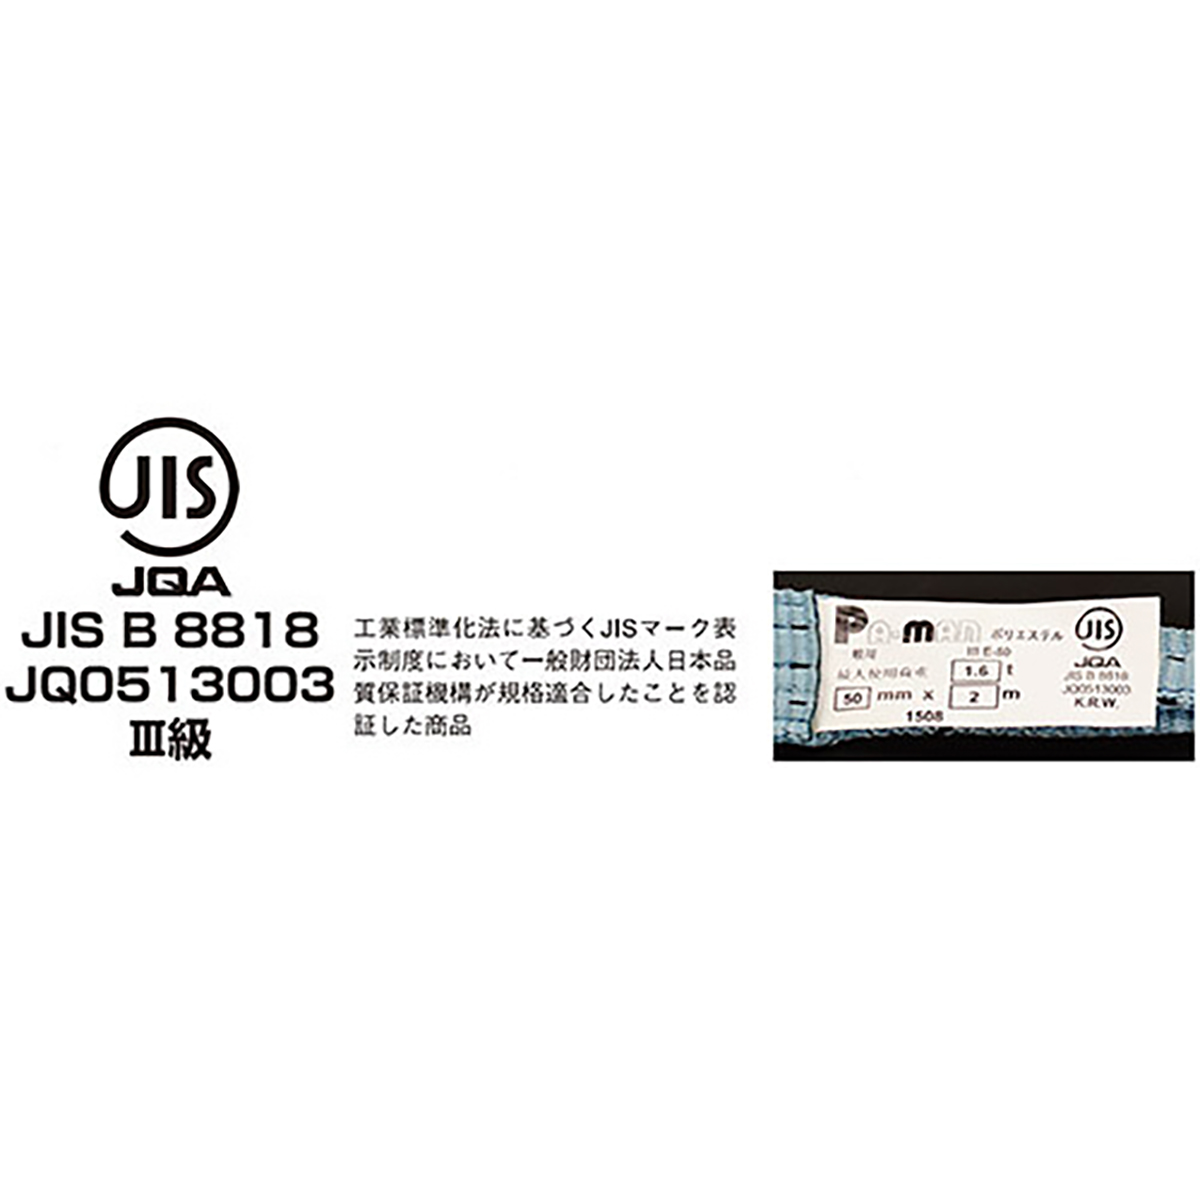 ポリベルトスリング JIS III級 ソフト面付 巾50mm 3m 1本